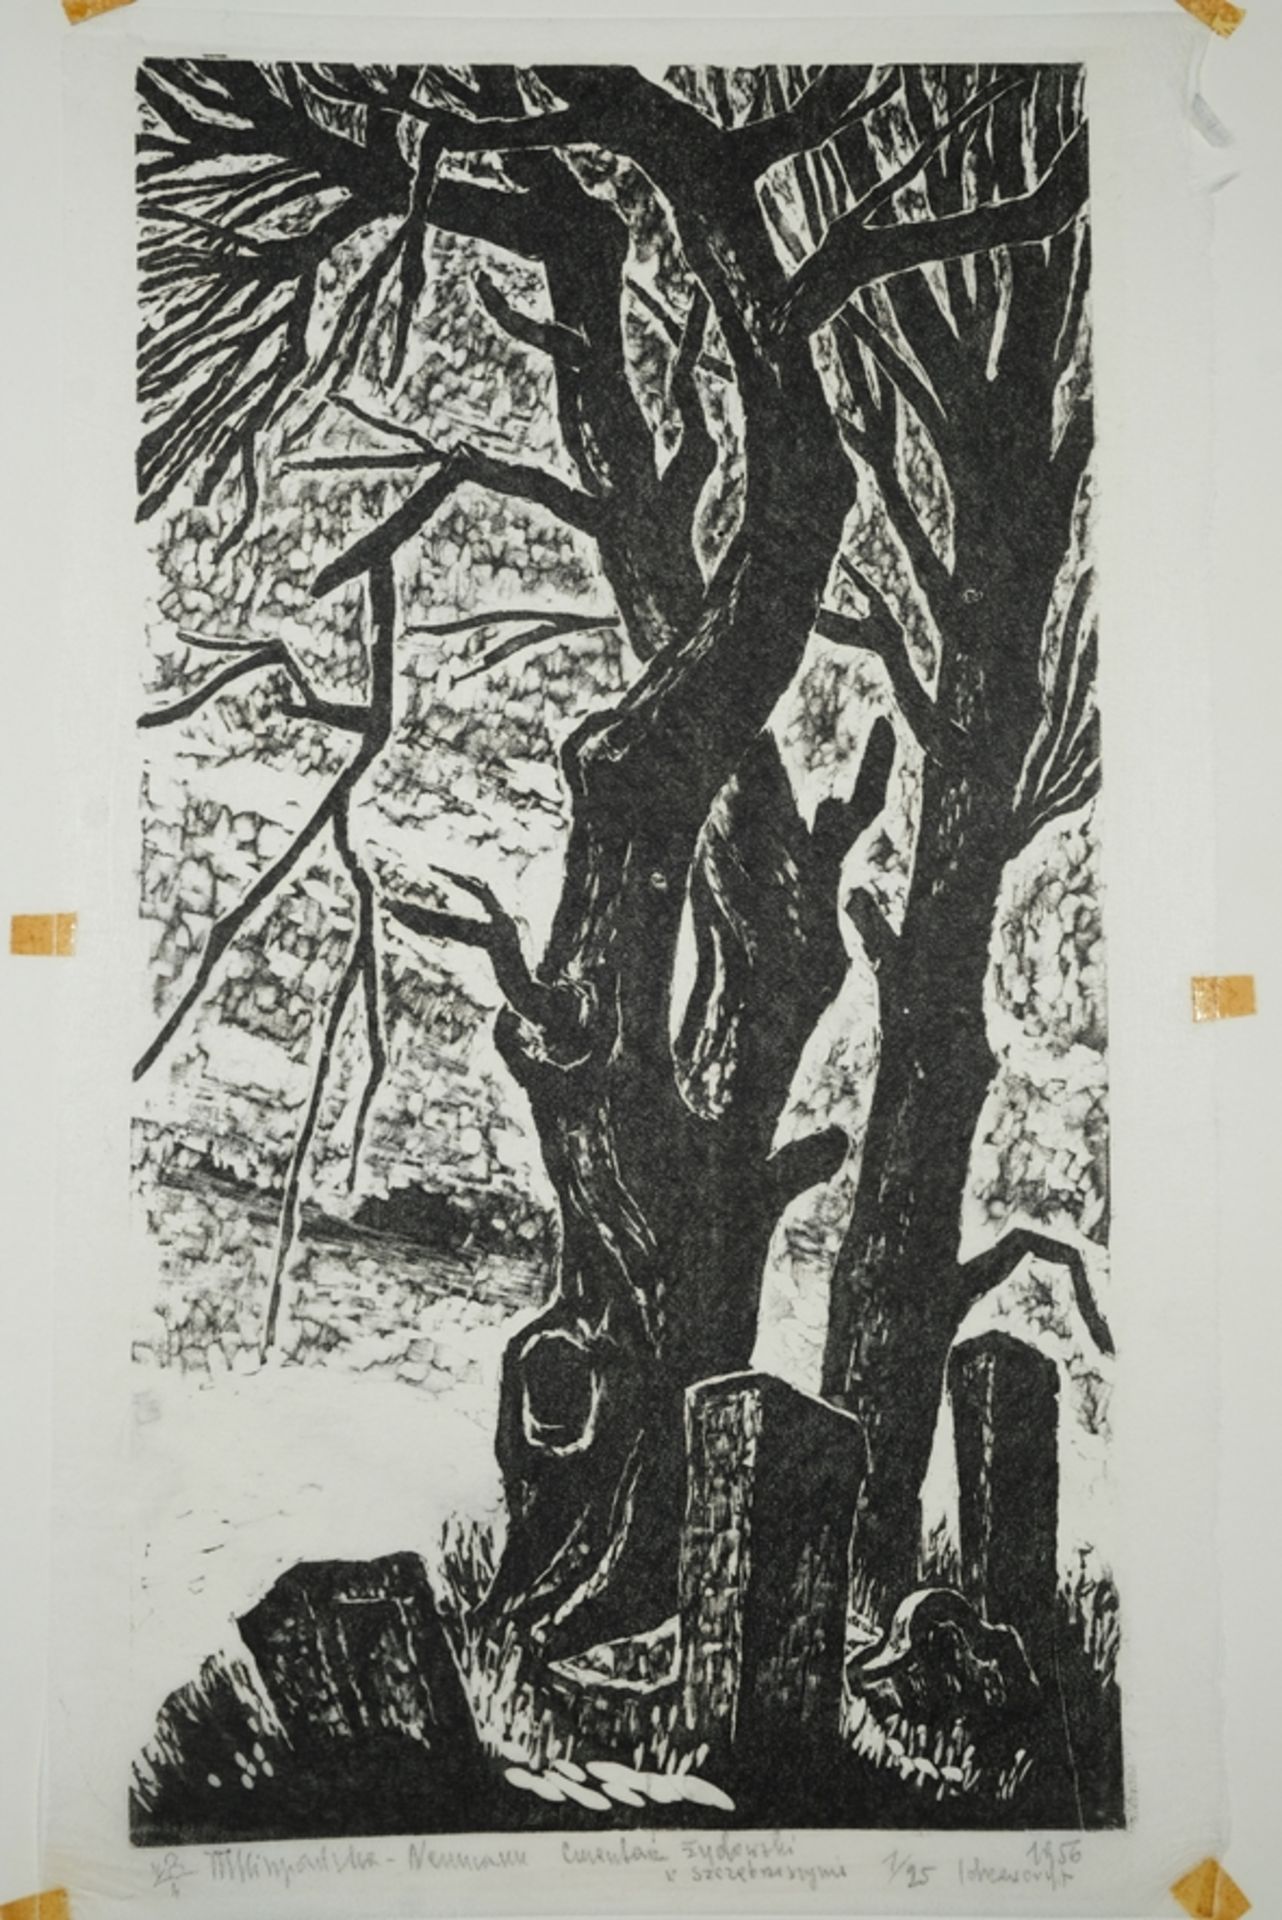 Hiszpanska-Neumann, Maria (1917-1980) "Campo Sancto Judaico en Szcebrezeszyn", 1956, woodcut. Depic